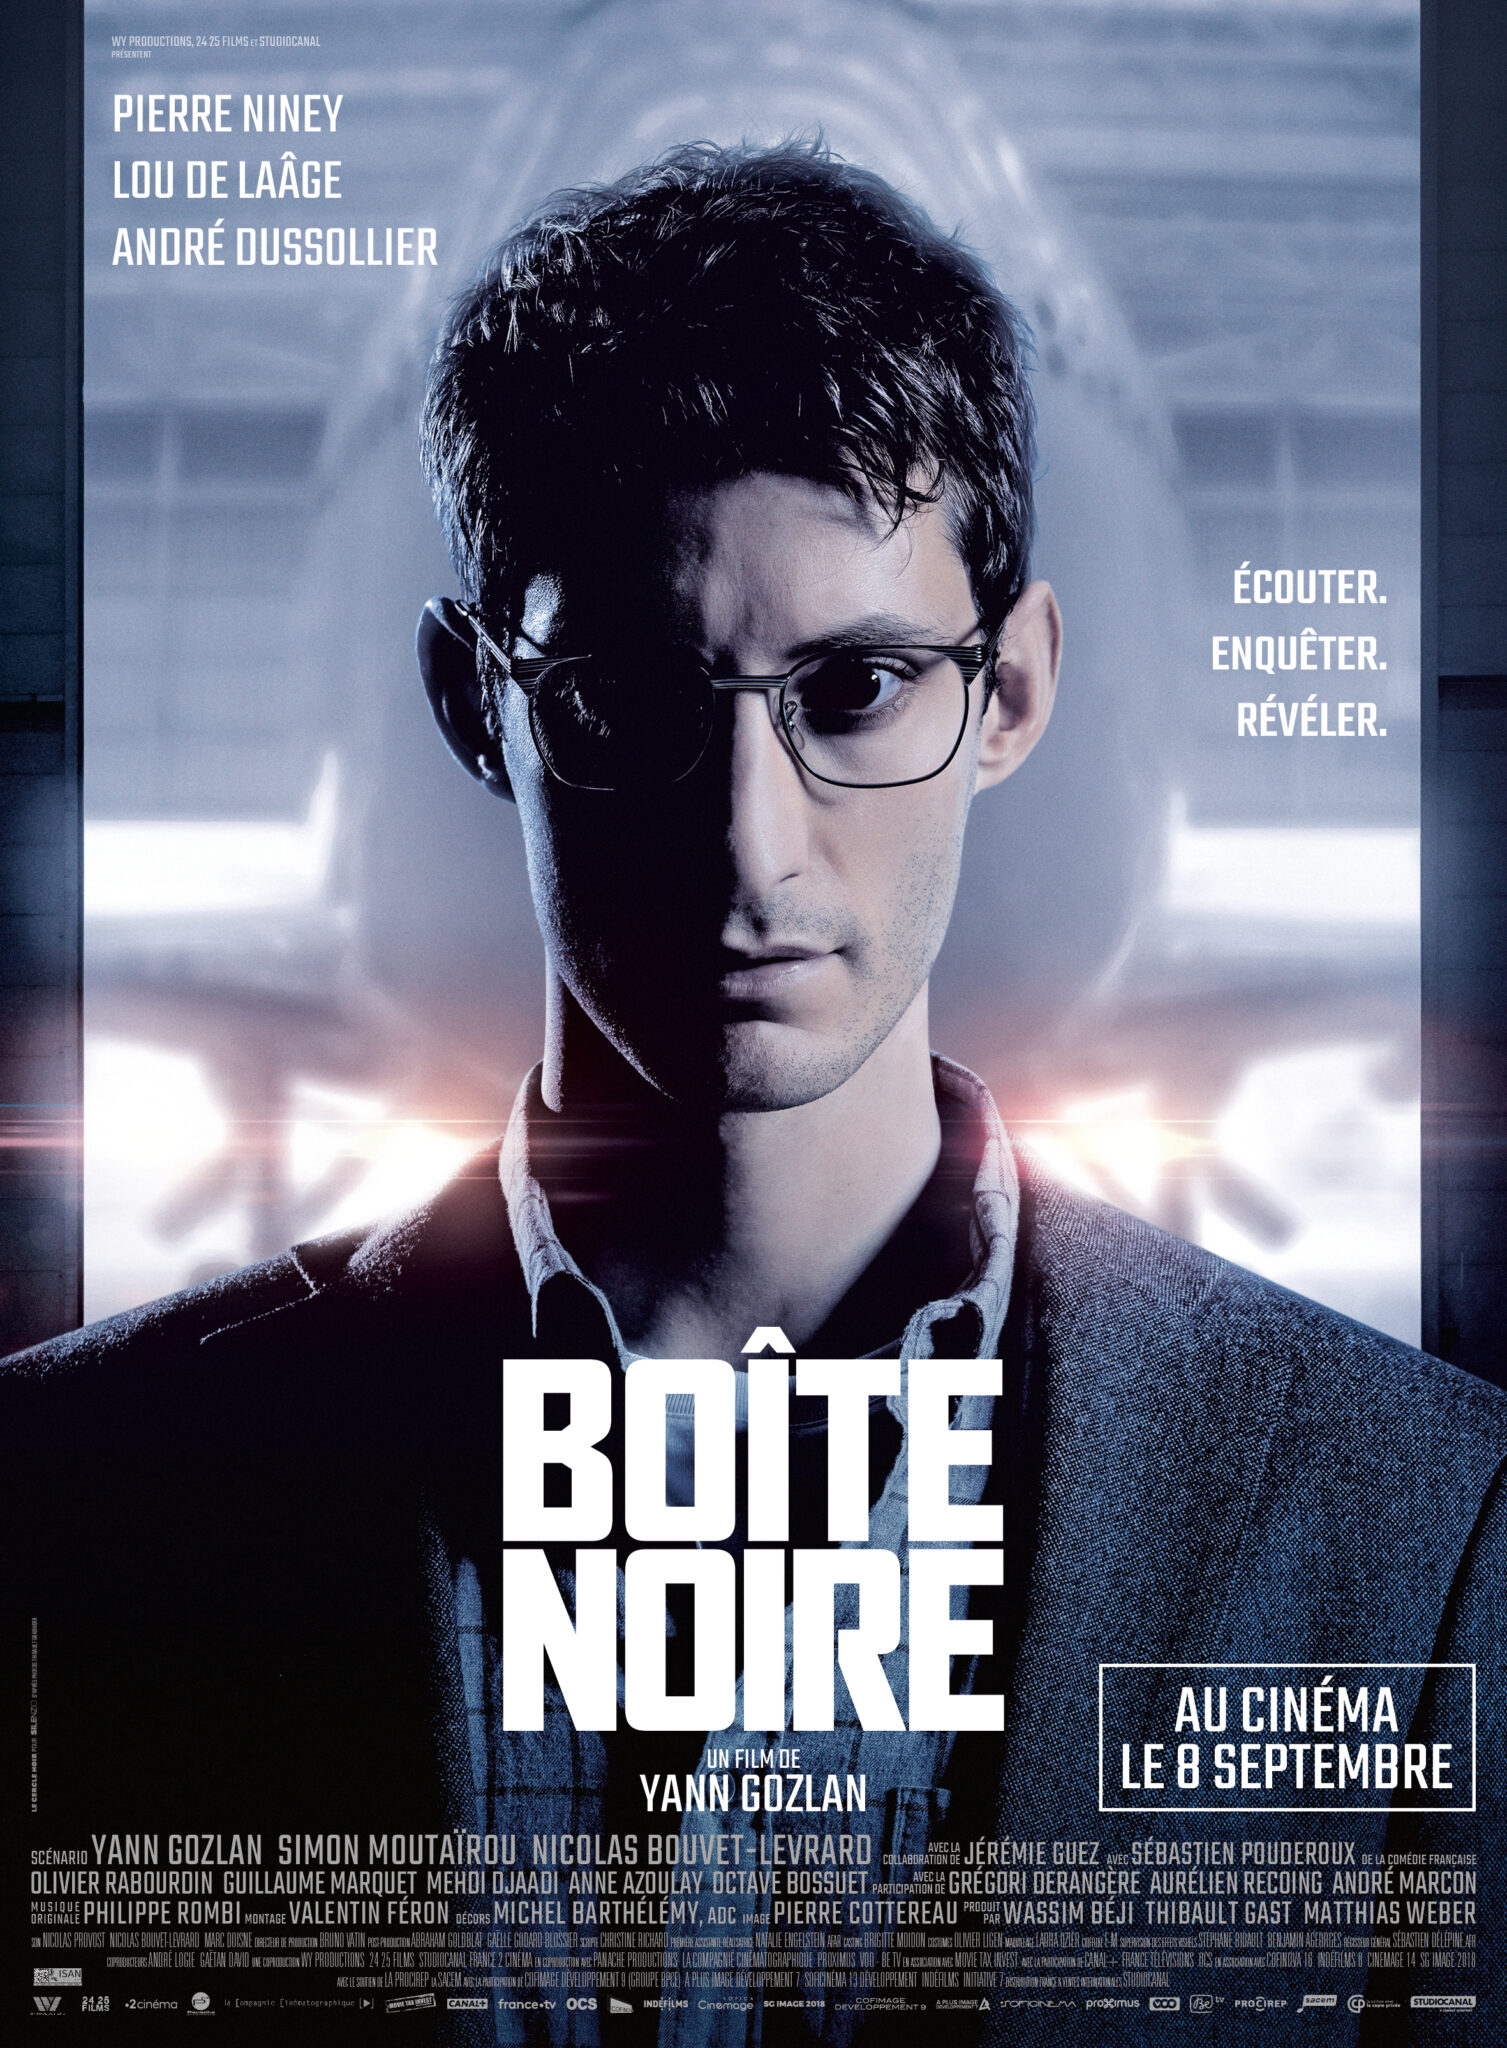 BOITE NOIRE AFFICHE film cinéma